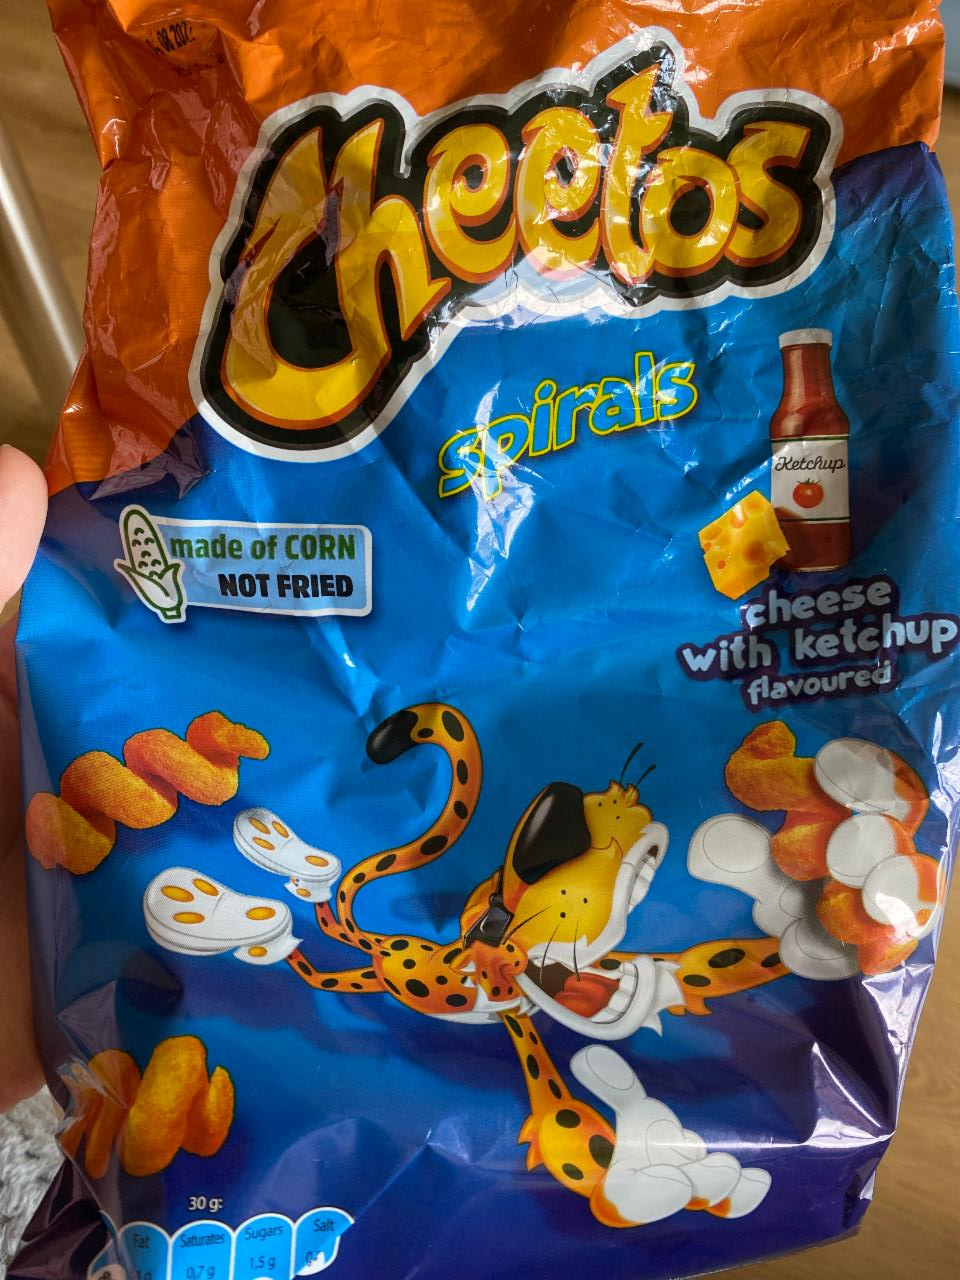 Фото - Читос спиральки сыр и кетчуп Cheetos